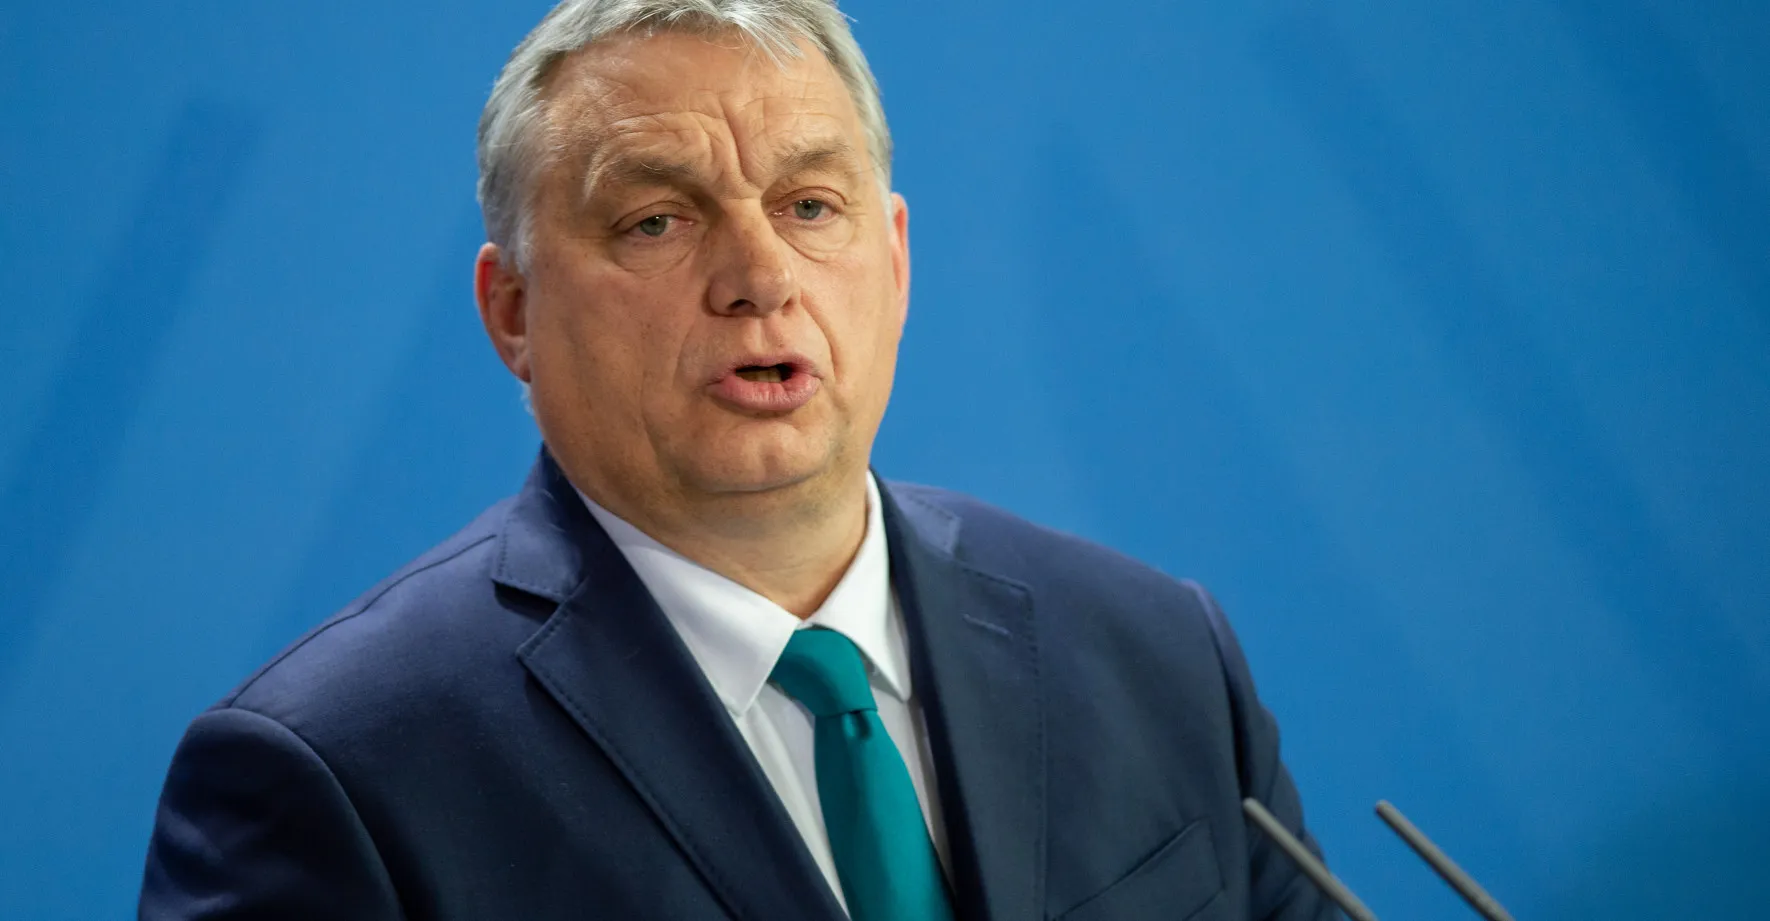 Orbán naznačil možné přehodnocení vztahů s Ruskem